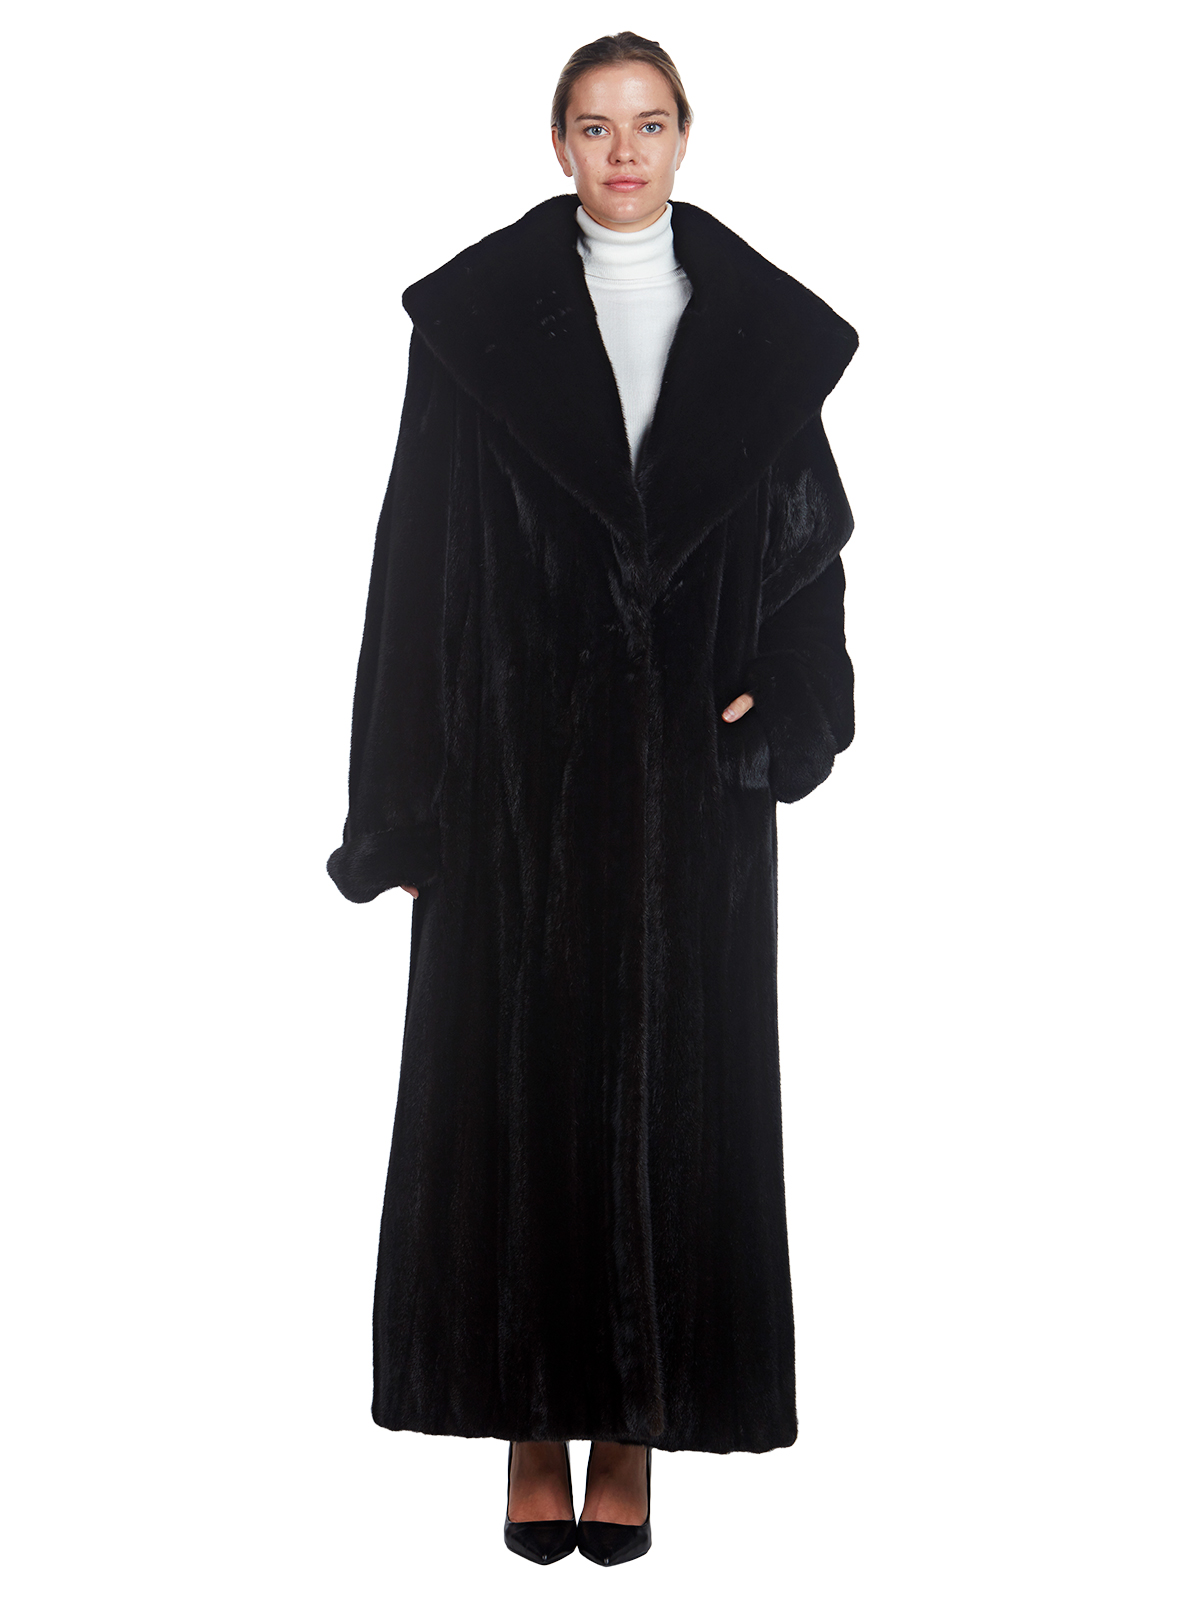 Full Length Ranch Mink Fur Coat - Women's Fur Coat - XL | Estate Furs